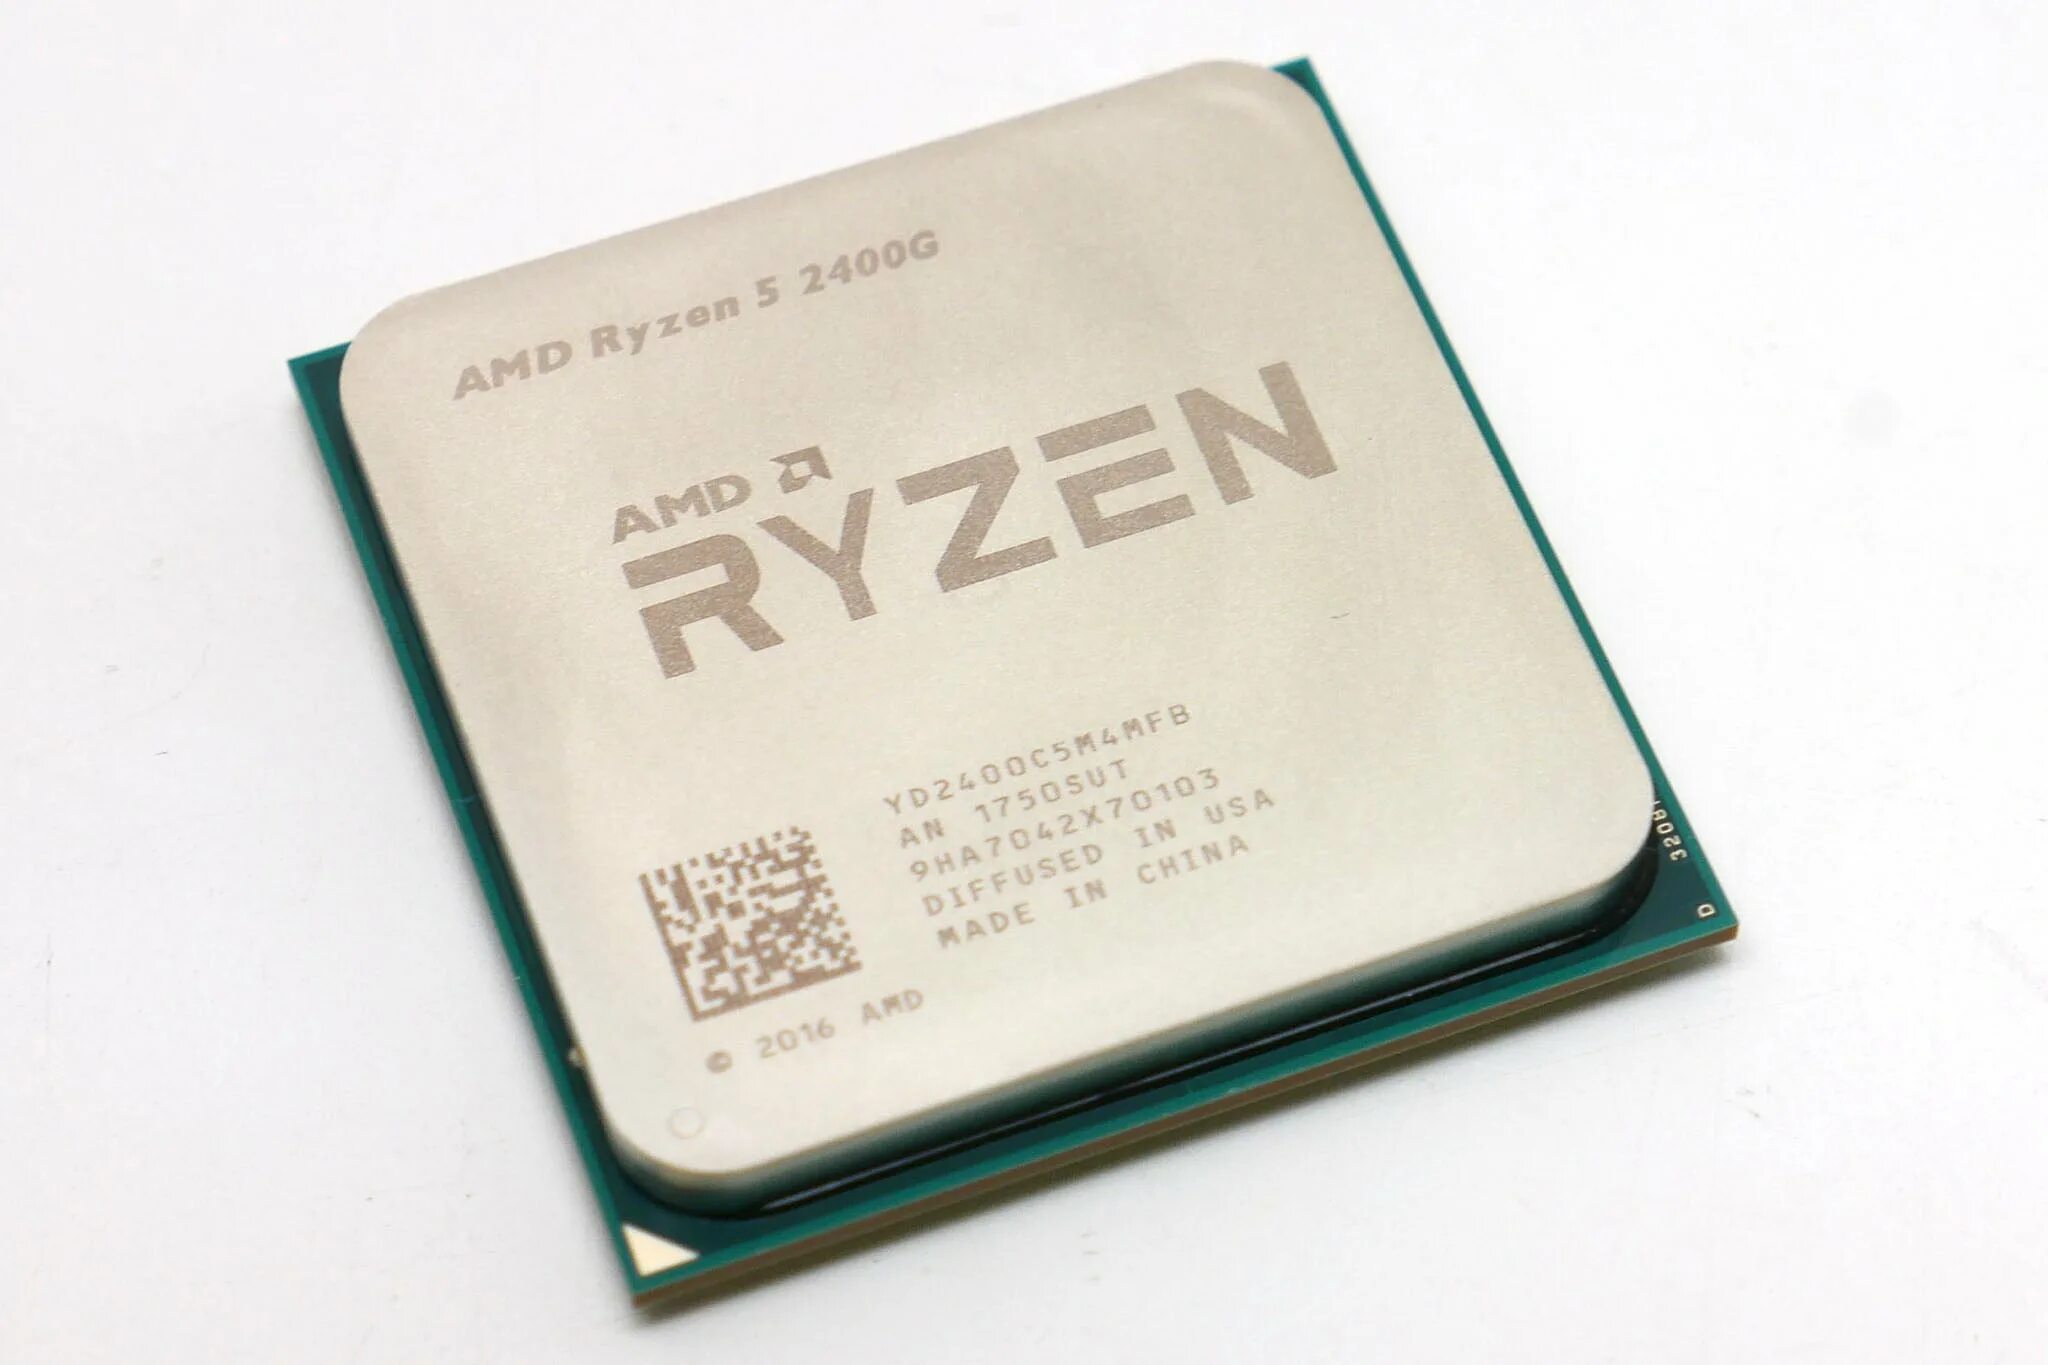 Ryzen 5 radeon graphics. Процессор AMD Ryzen 5 2400g. Процессор AMD yd2200c5m4mfb. Процессор AMD Ryzen 5 2400g OEM. AMD Ryzen 5 Pro 2400g.